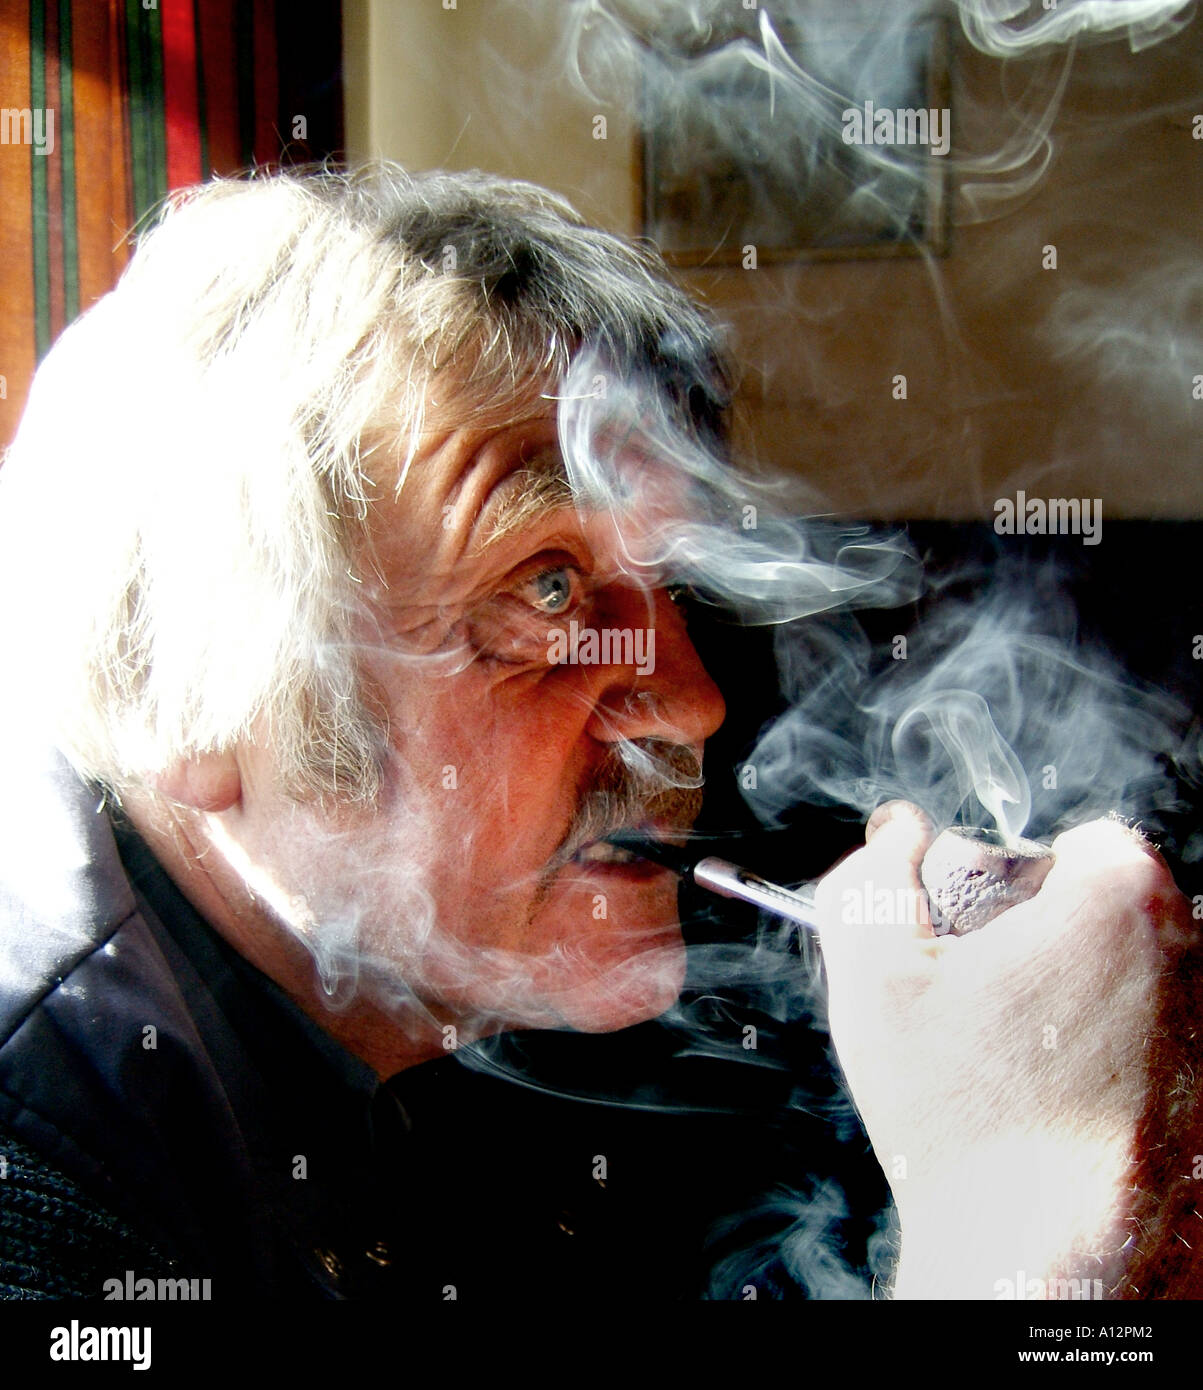 man smoking a pipe Stock Photo